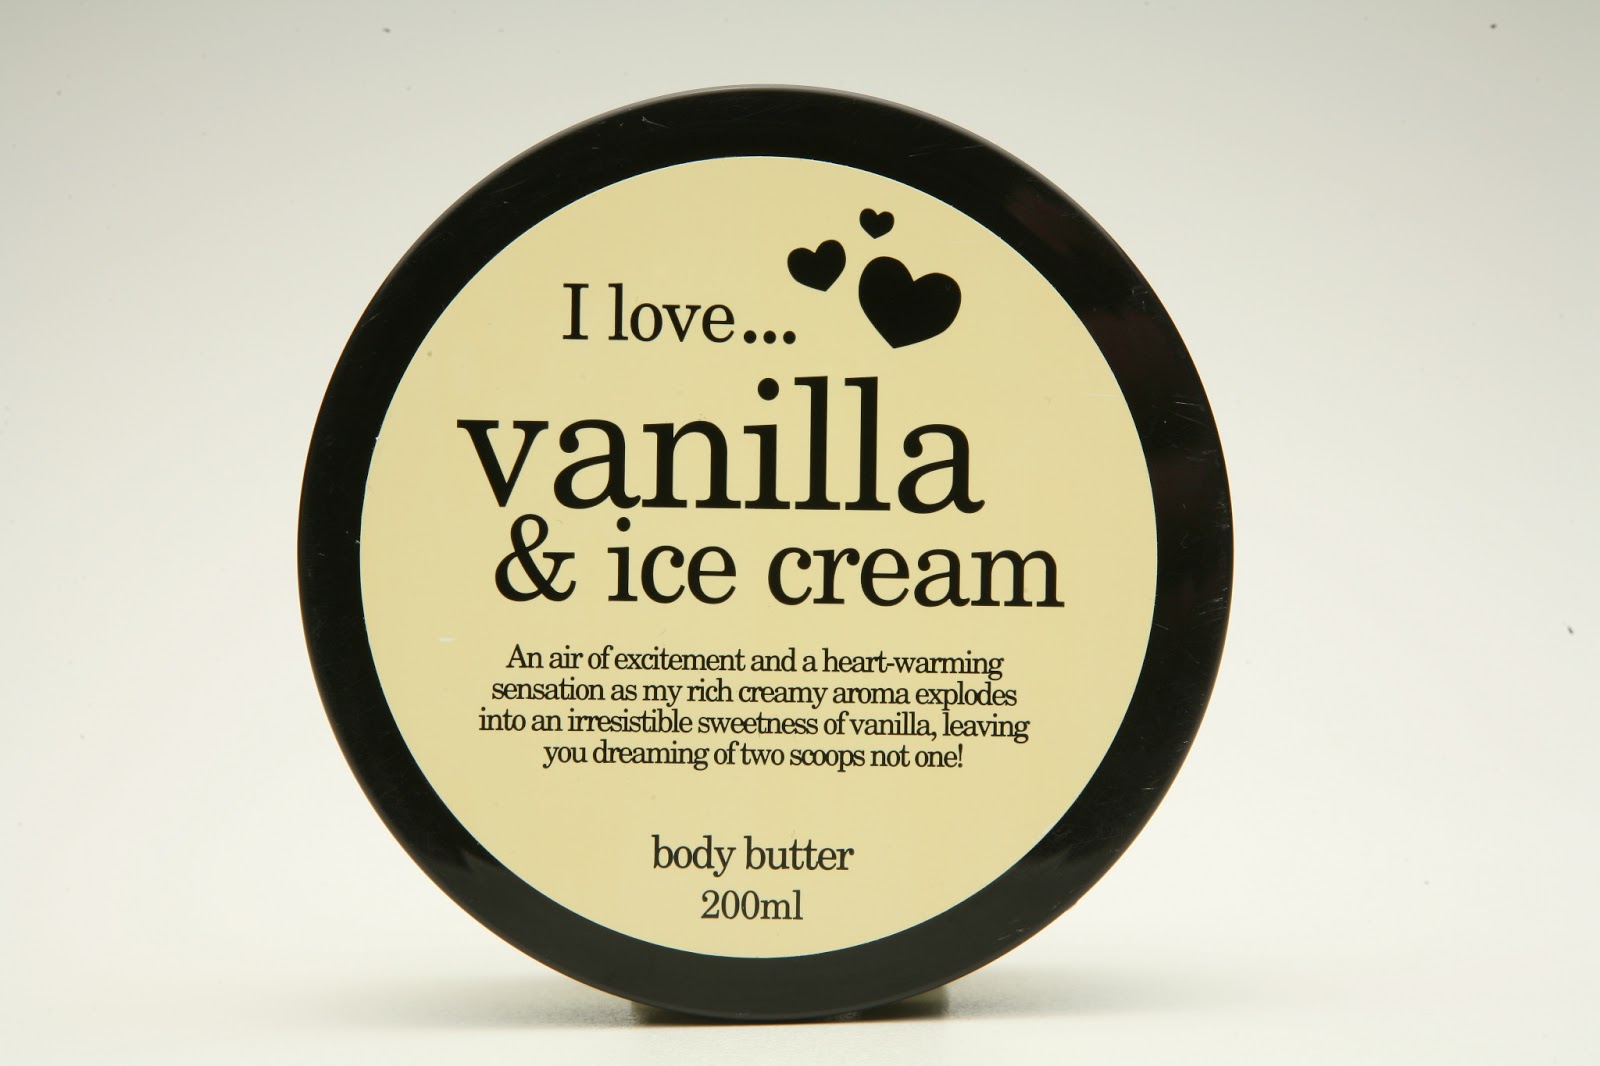 Масло для тела - ваниль. Lovely косметика. Баттер для тела Vanilla. Для тела баттер ванильное мороженое. Косметика лов